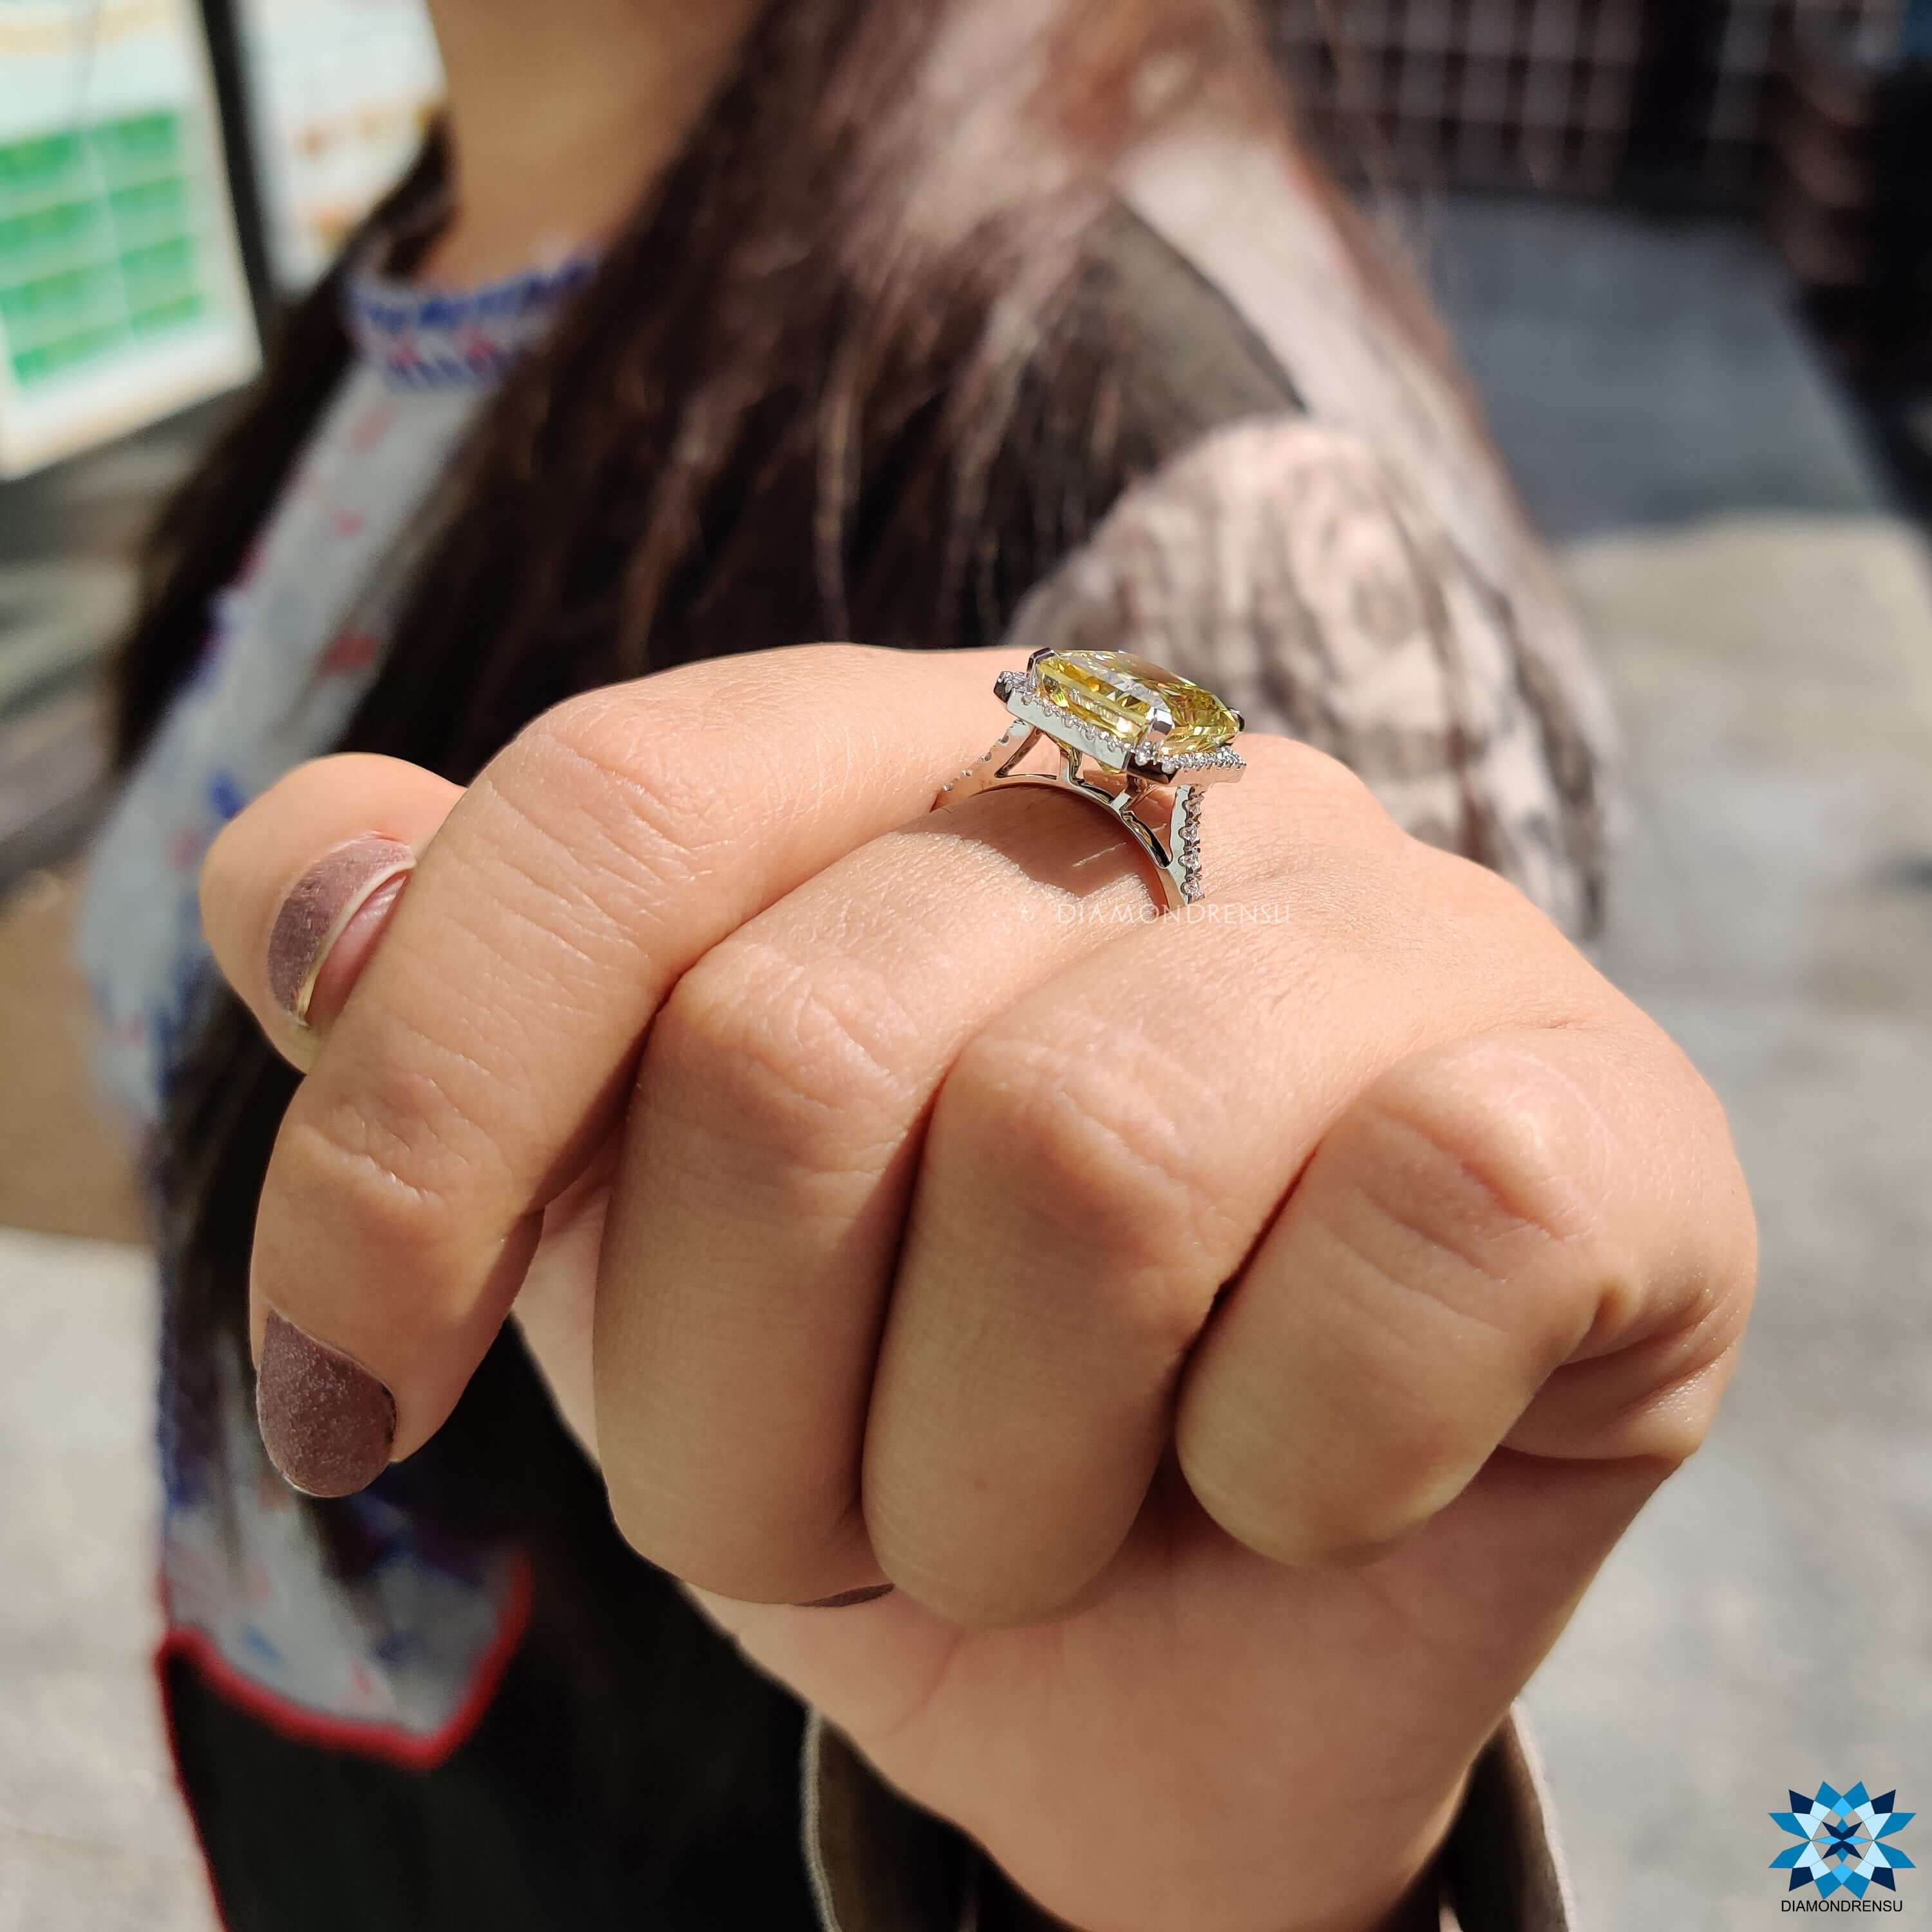 unique moissanite engagement ring - diamondrensu